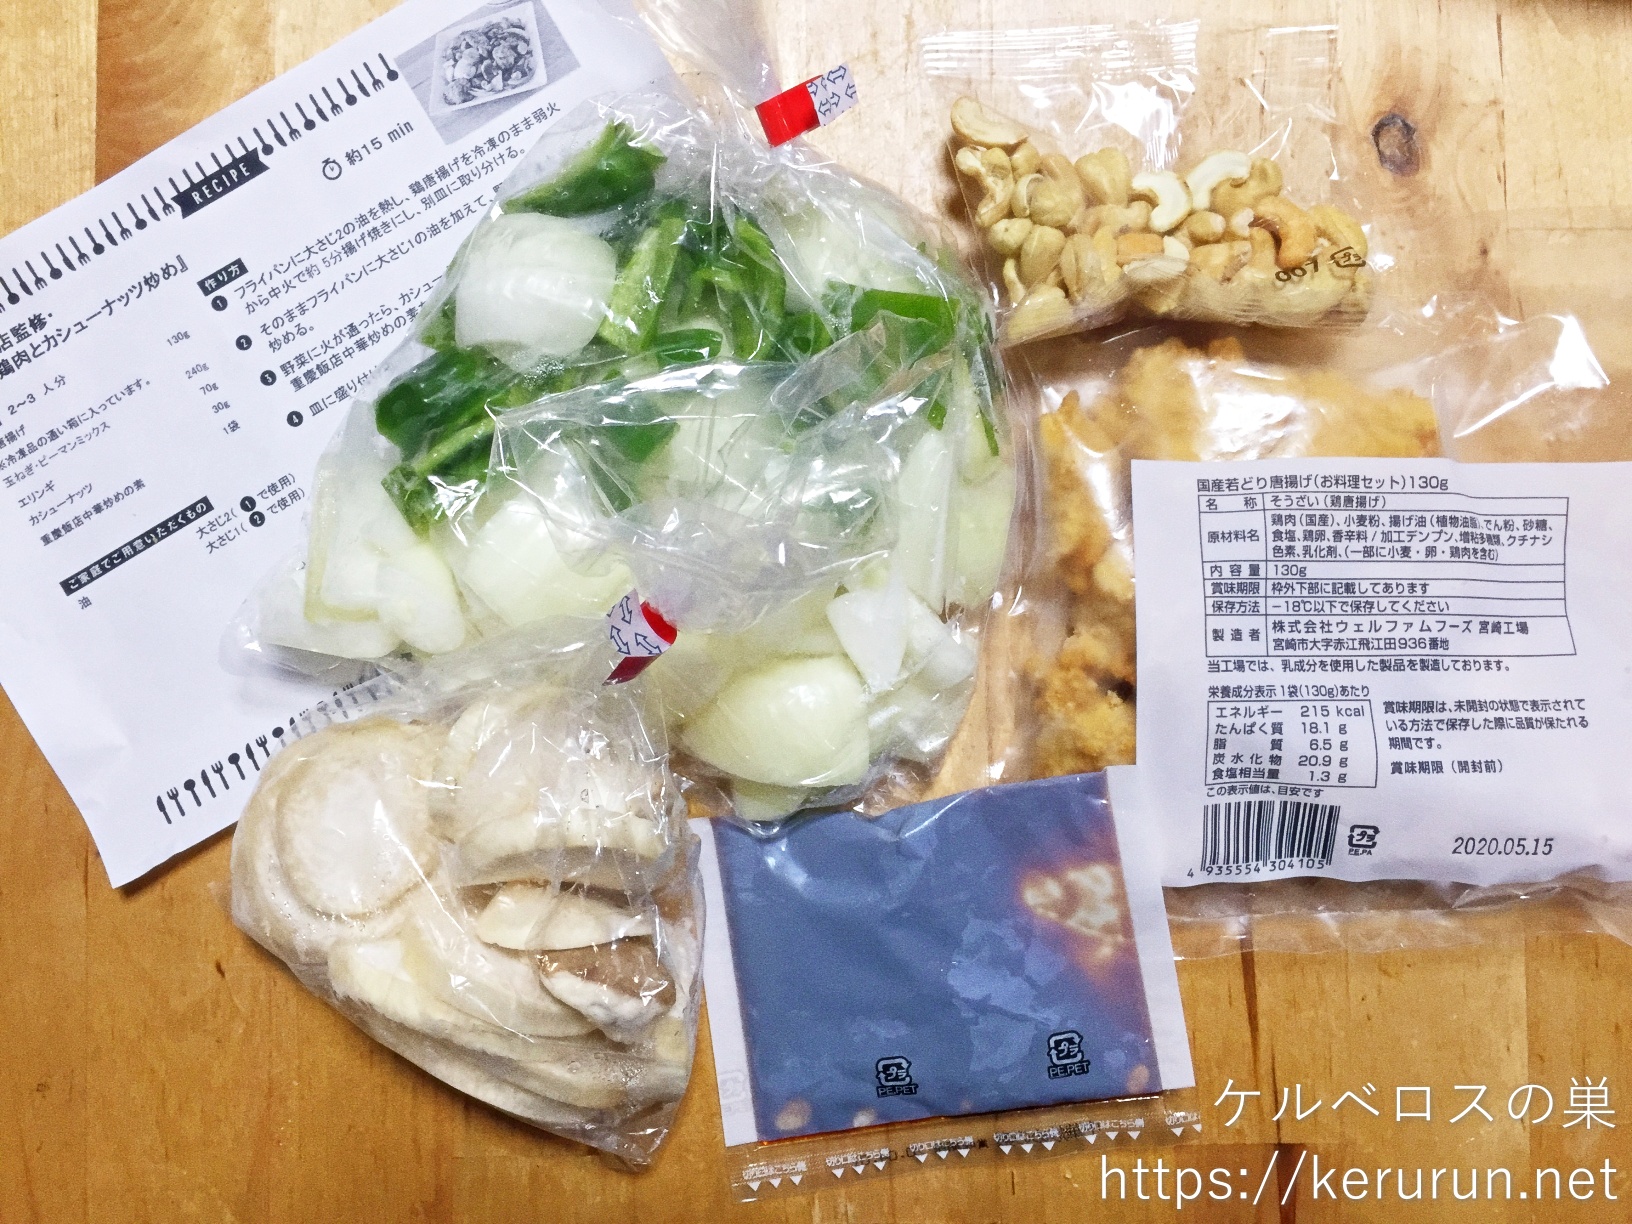 パルシステムお料理セット「重慶飯店監修・鶏肉とカシューナッツ炒め」で晩ごはん